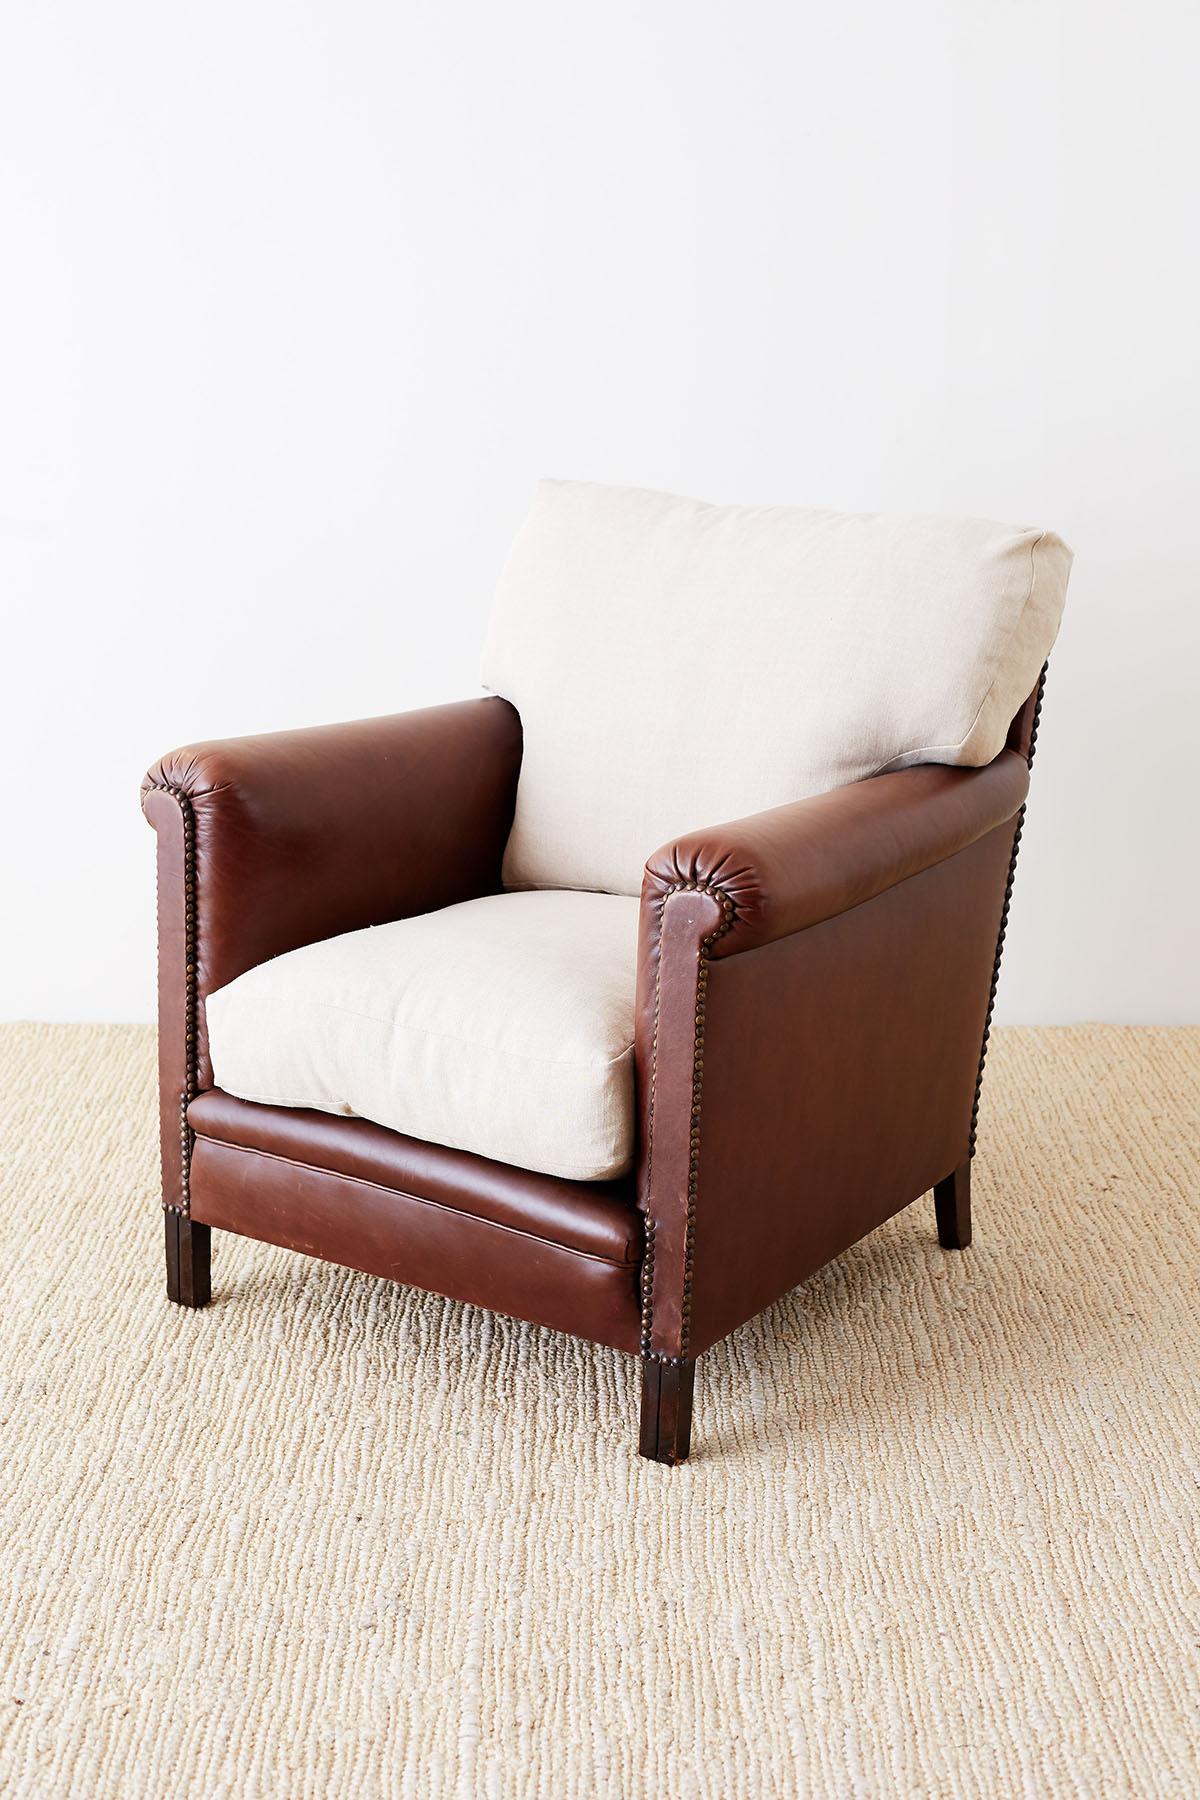 Amerikanischer Clubsessel aus Leder des 20. Jahrhunderts im Art-déco-Stil. Der Stuhl hat eine tiefe Sitzfläche mit flachen, geraden Armlehnen, die an der Oberseite dezent gerollt sind. Der großzügige Sitz hat dicke, lose Sitzkissen, die mit Daunen